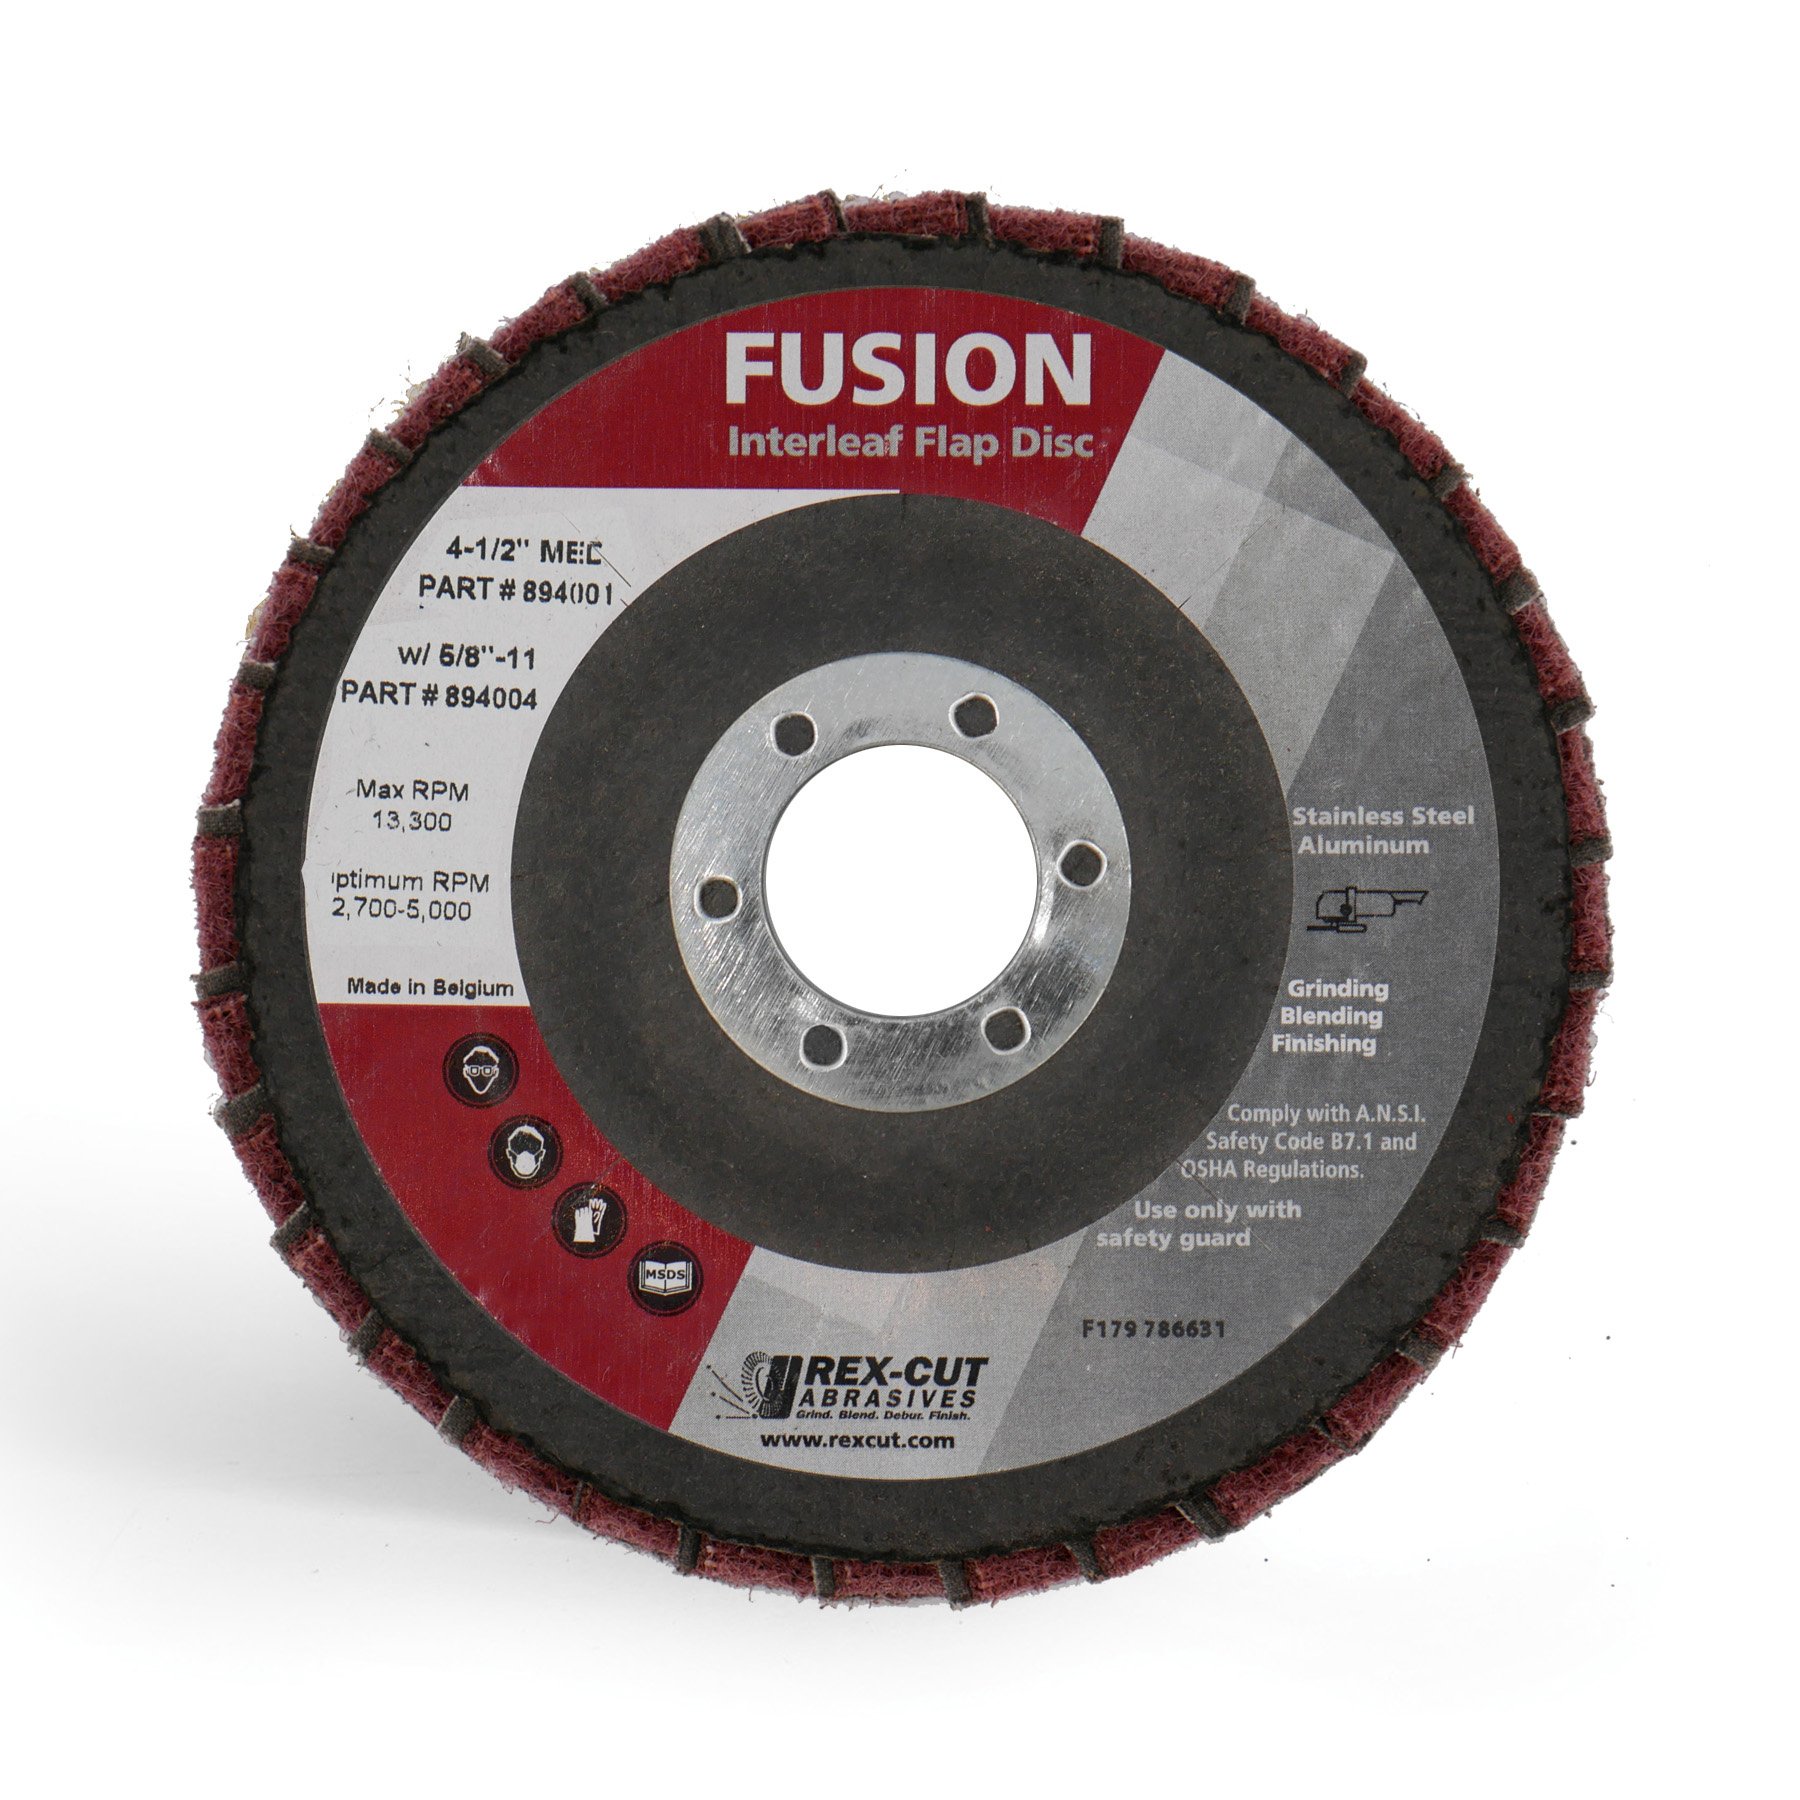 Fusion Interleaf Flap Disc